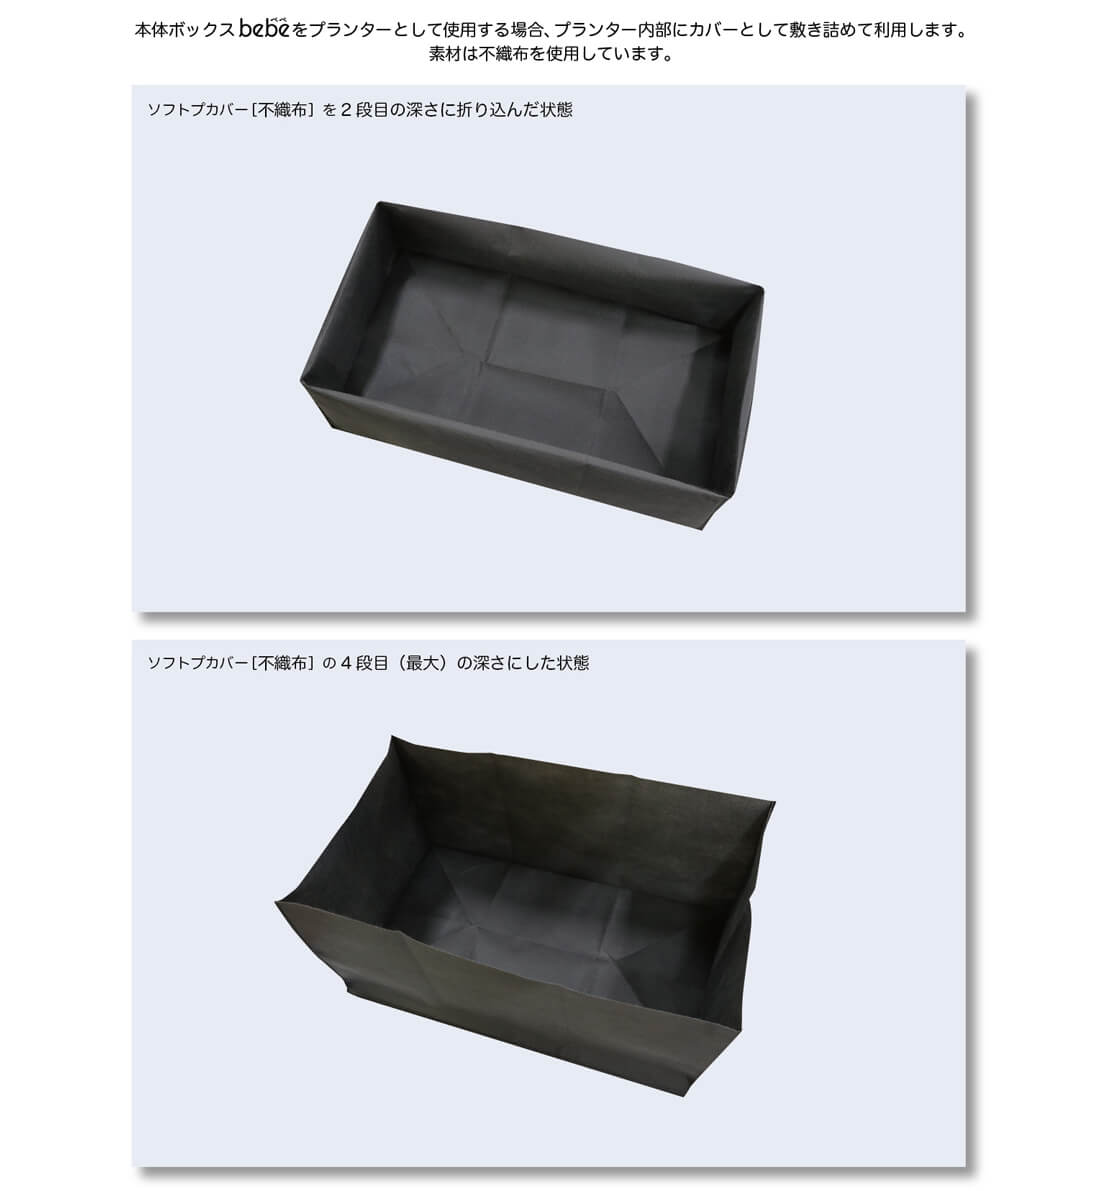 本体ボックスbebeをプランターとして使用する場合、プランター内部にカバーとして敷き詰めて利用します。素材は不織布を使用しています。